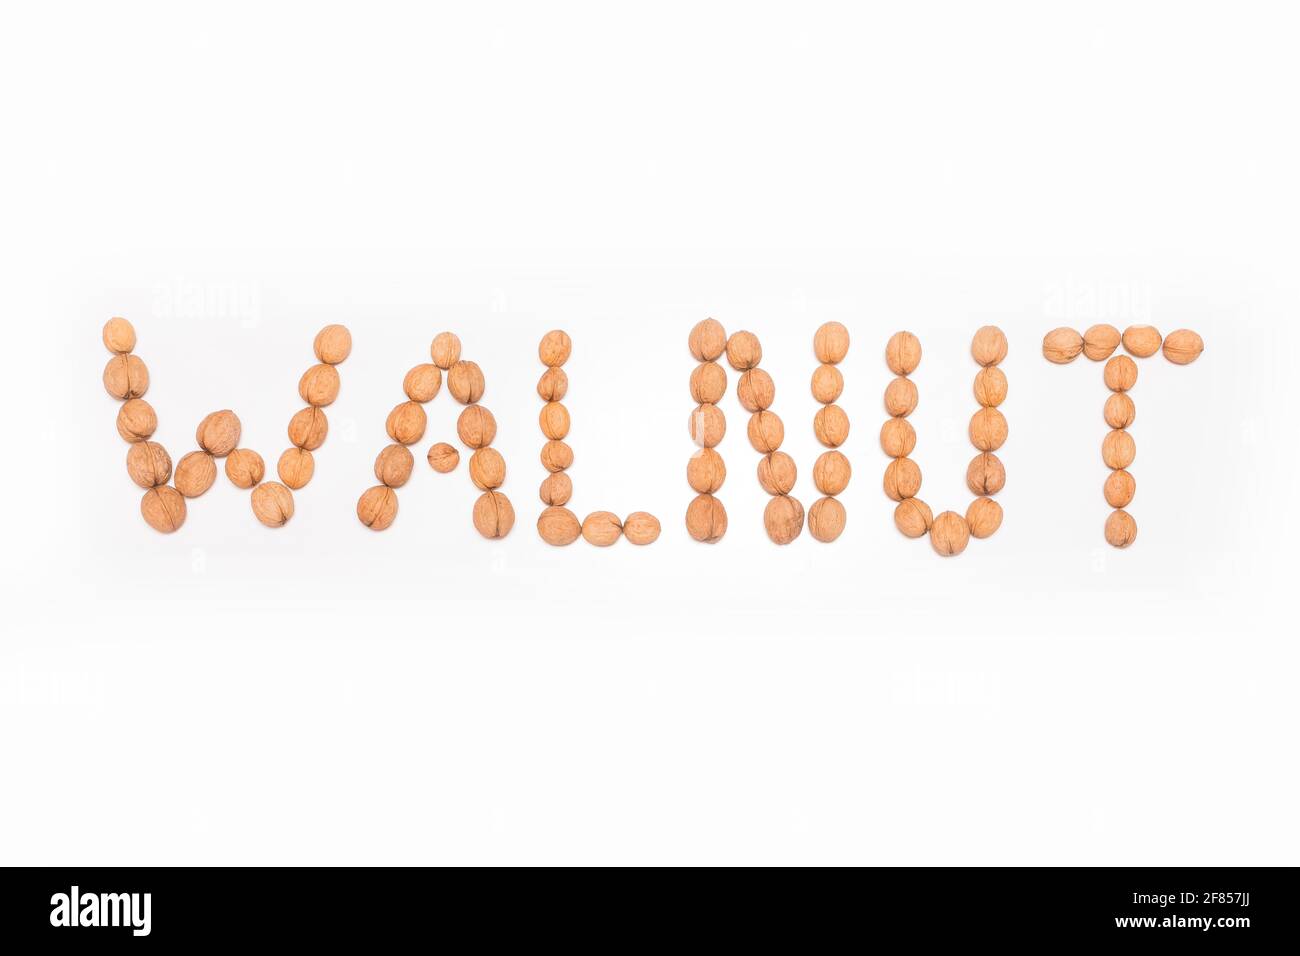 Wort Walnuss mit Walnüssen auf weißem Hintergrund ausgekleidet, isoliert. Stockfoto